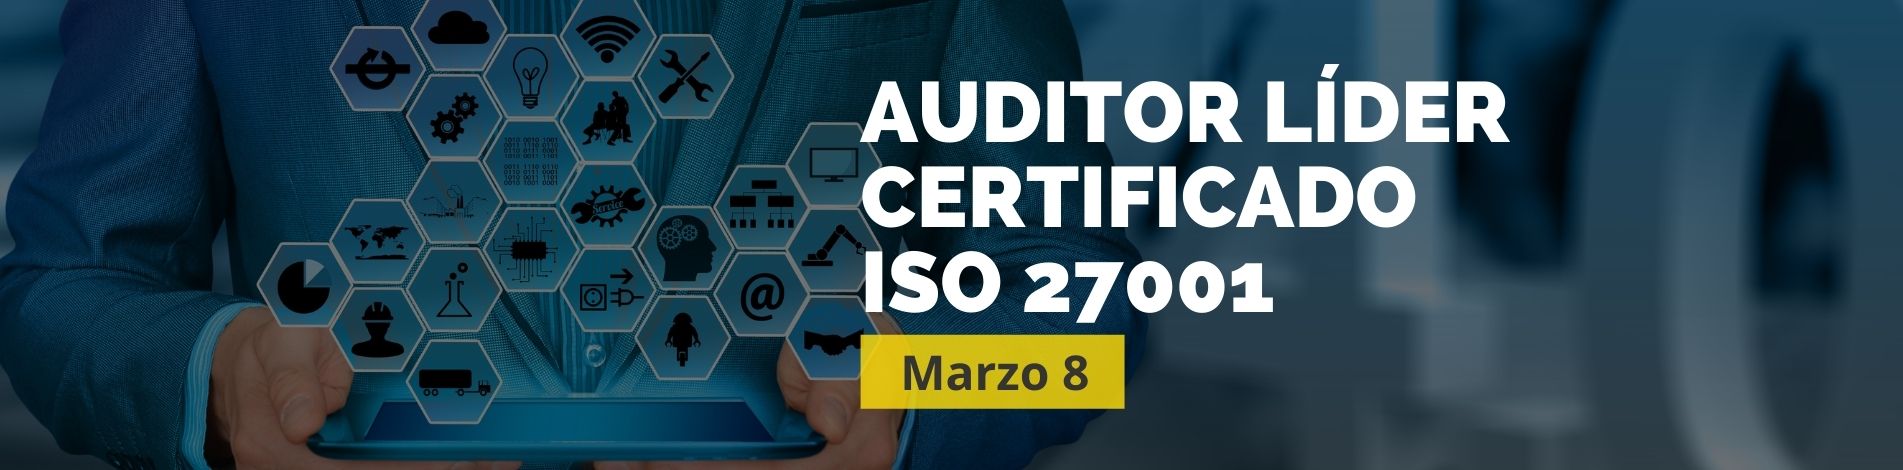 Auditor Líder Certificado ISO 27001